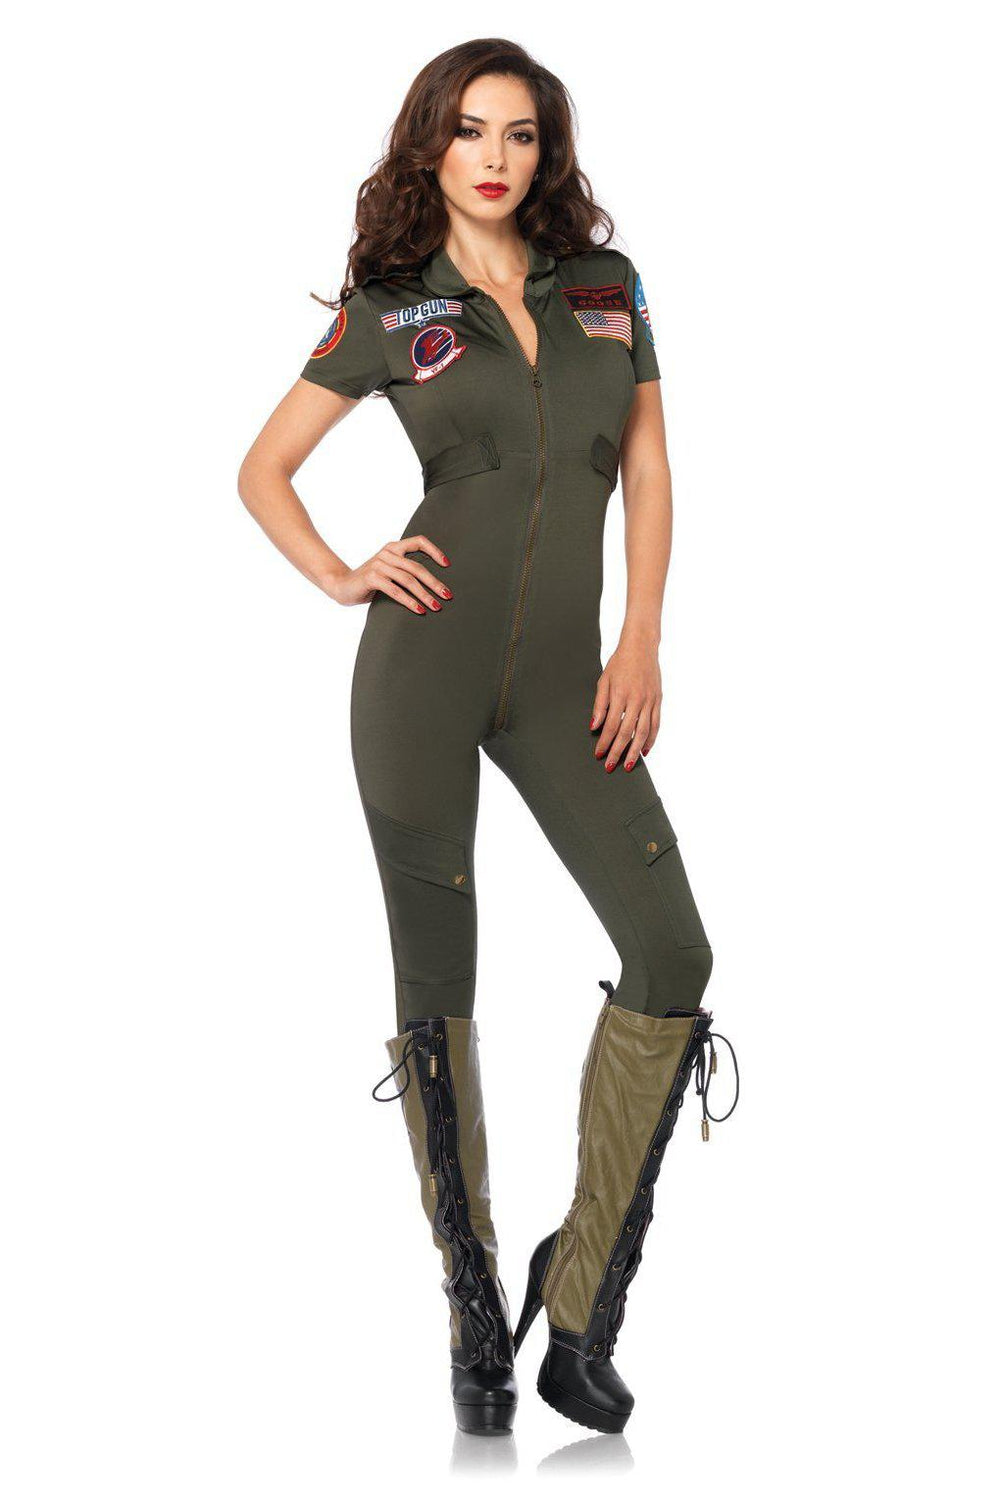 Top Gun Spandex Flight Suit-Military Costumes-Leg Avenue-SEXYSHOES.COM